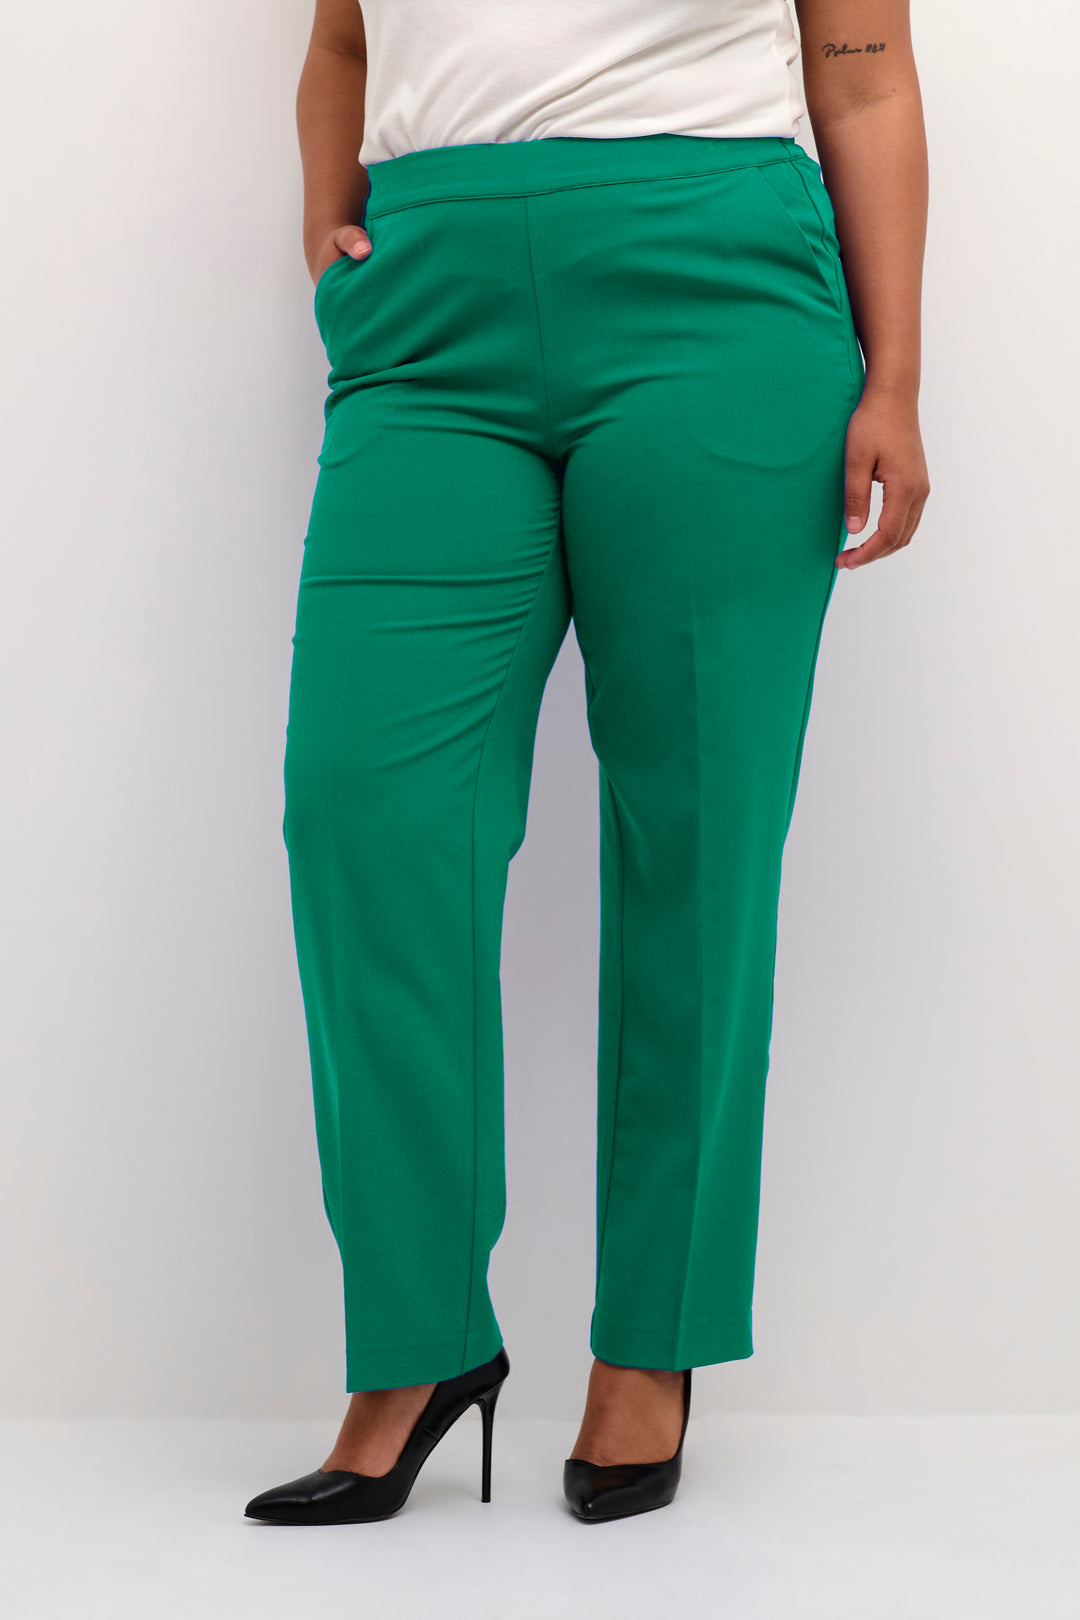 trendy groene broek